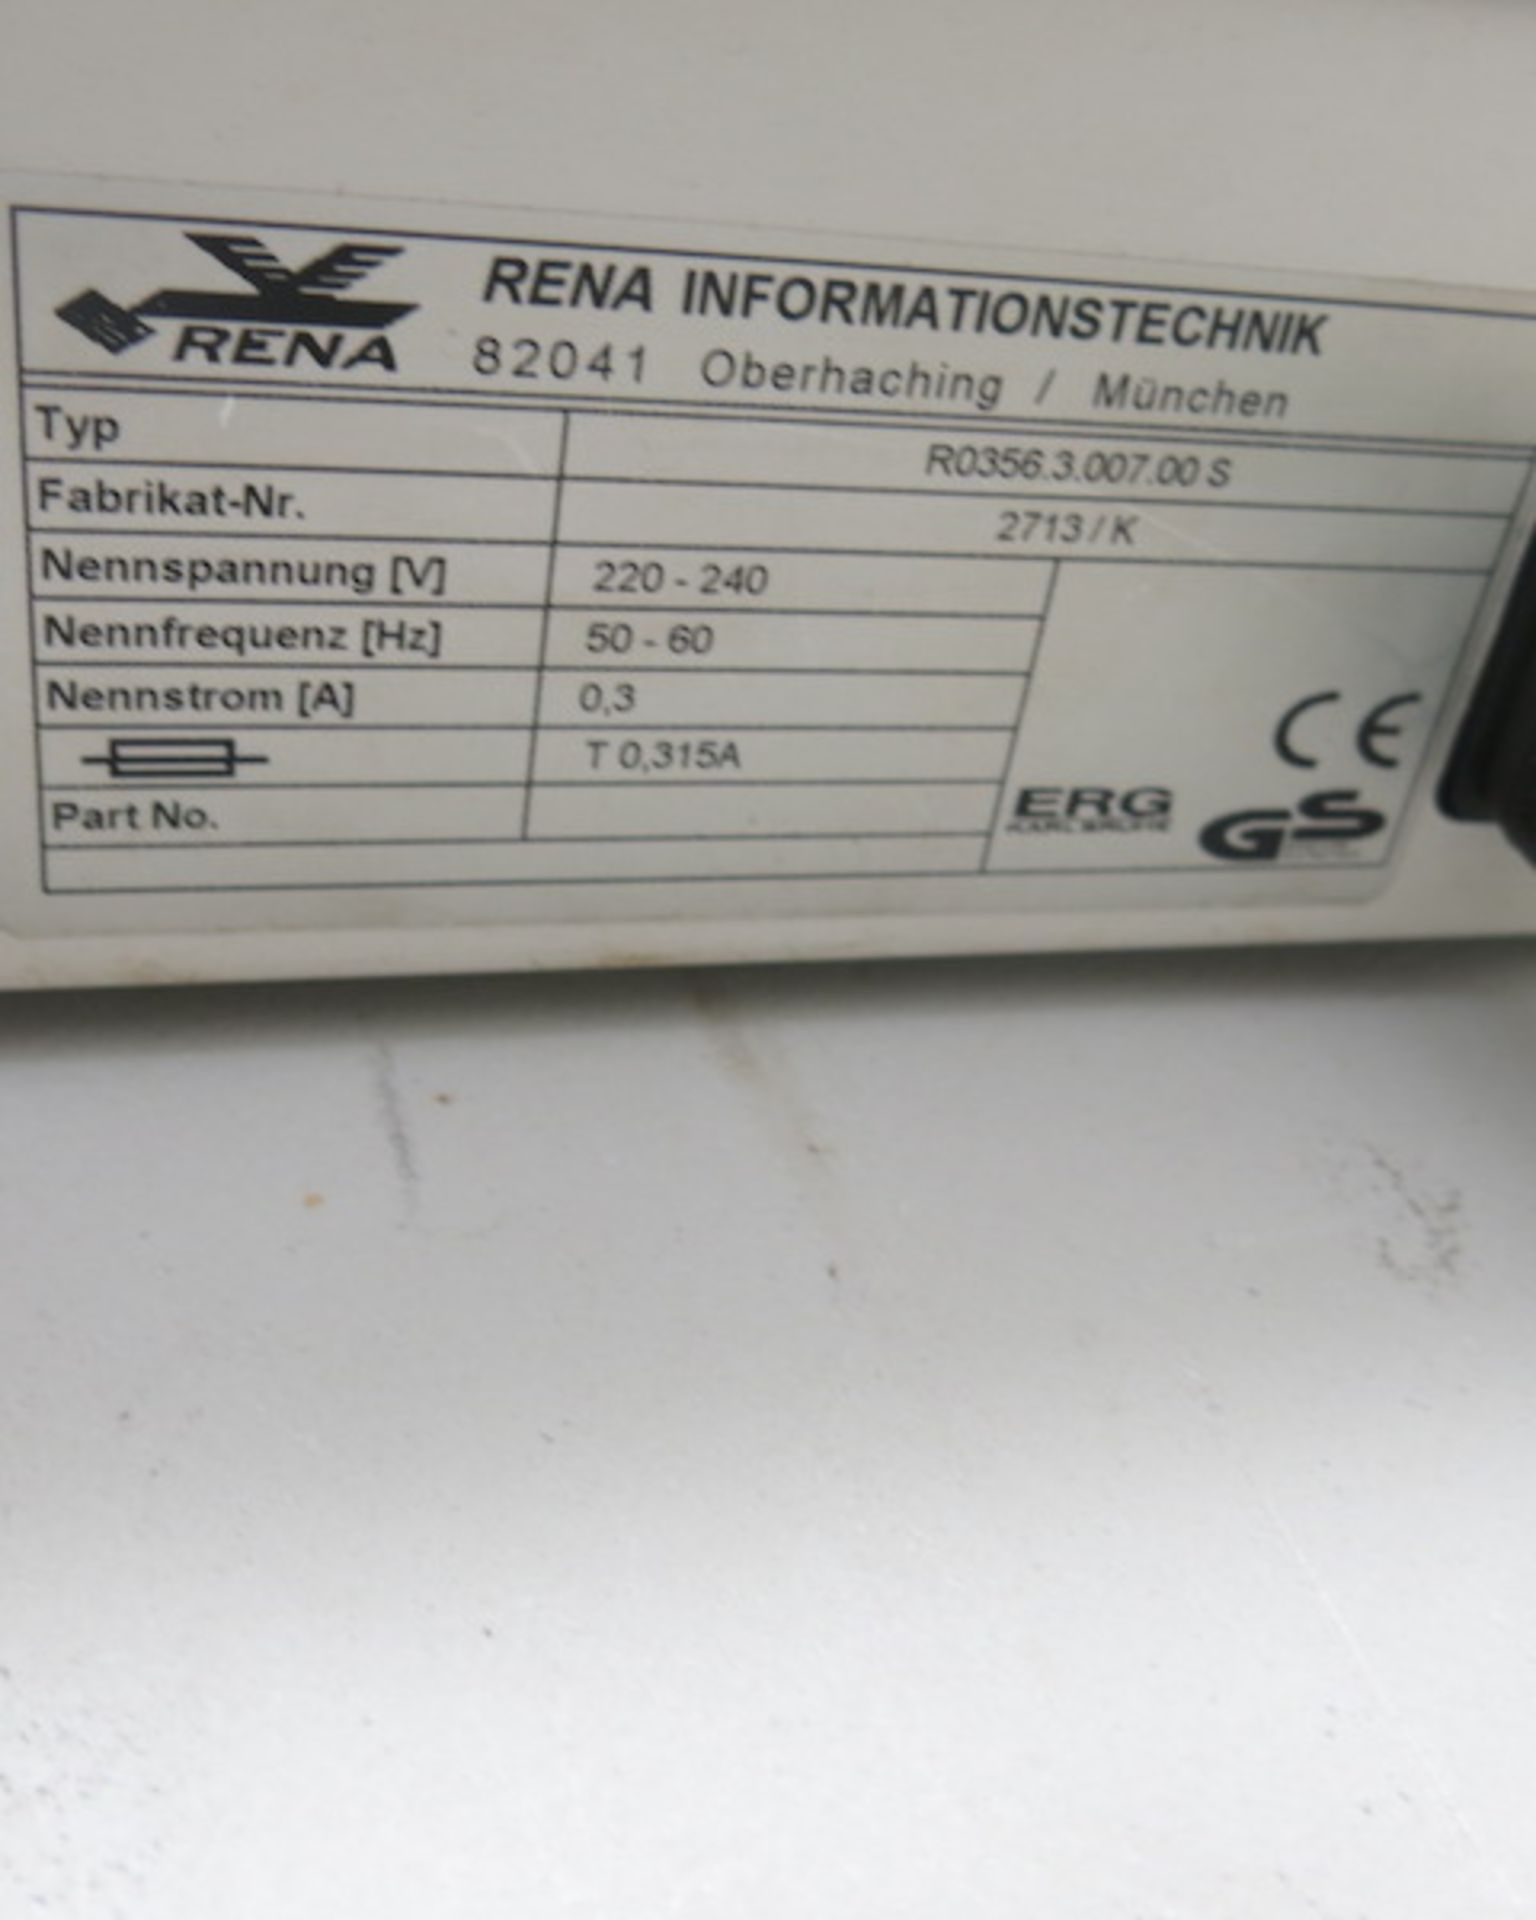 Rena Informationstechnik Variable Speed Conveyor Belt, Type RO356.3.007.00S, Machine Number 2713k, - Image 4 of 6